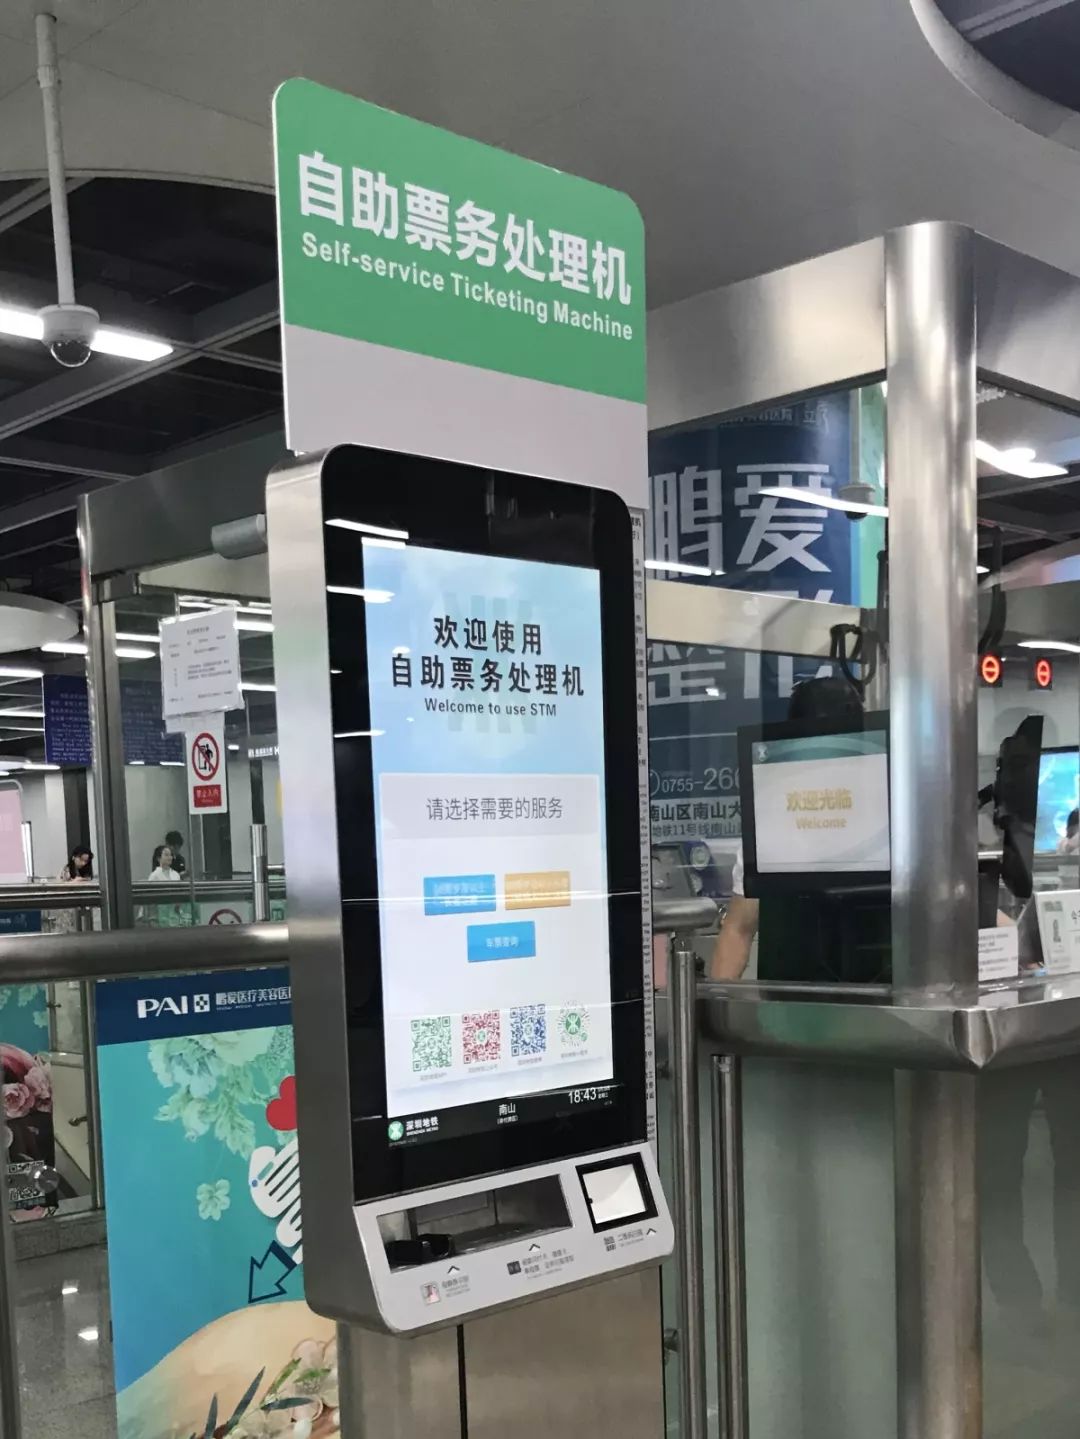 福田等客流大站则将设置8台以上未来,自助票务处理机还将在深圳地铁所